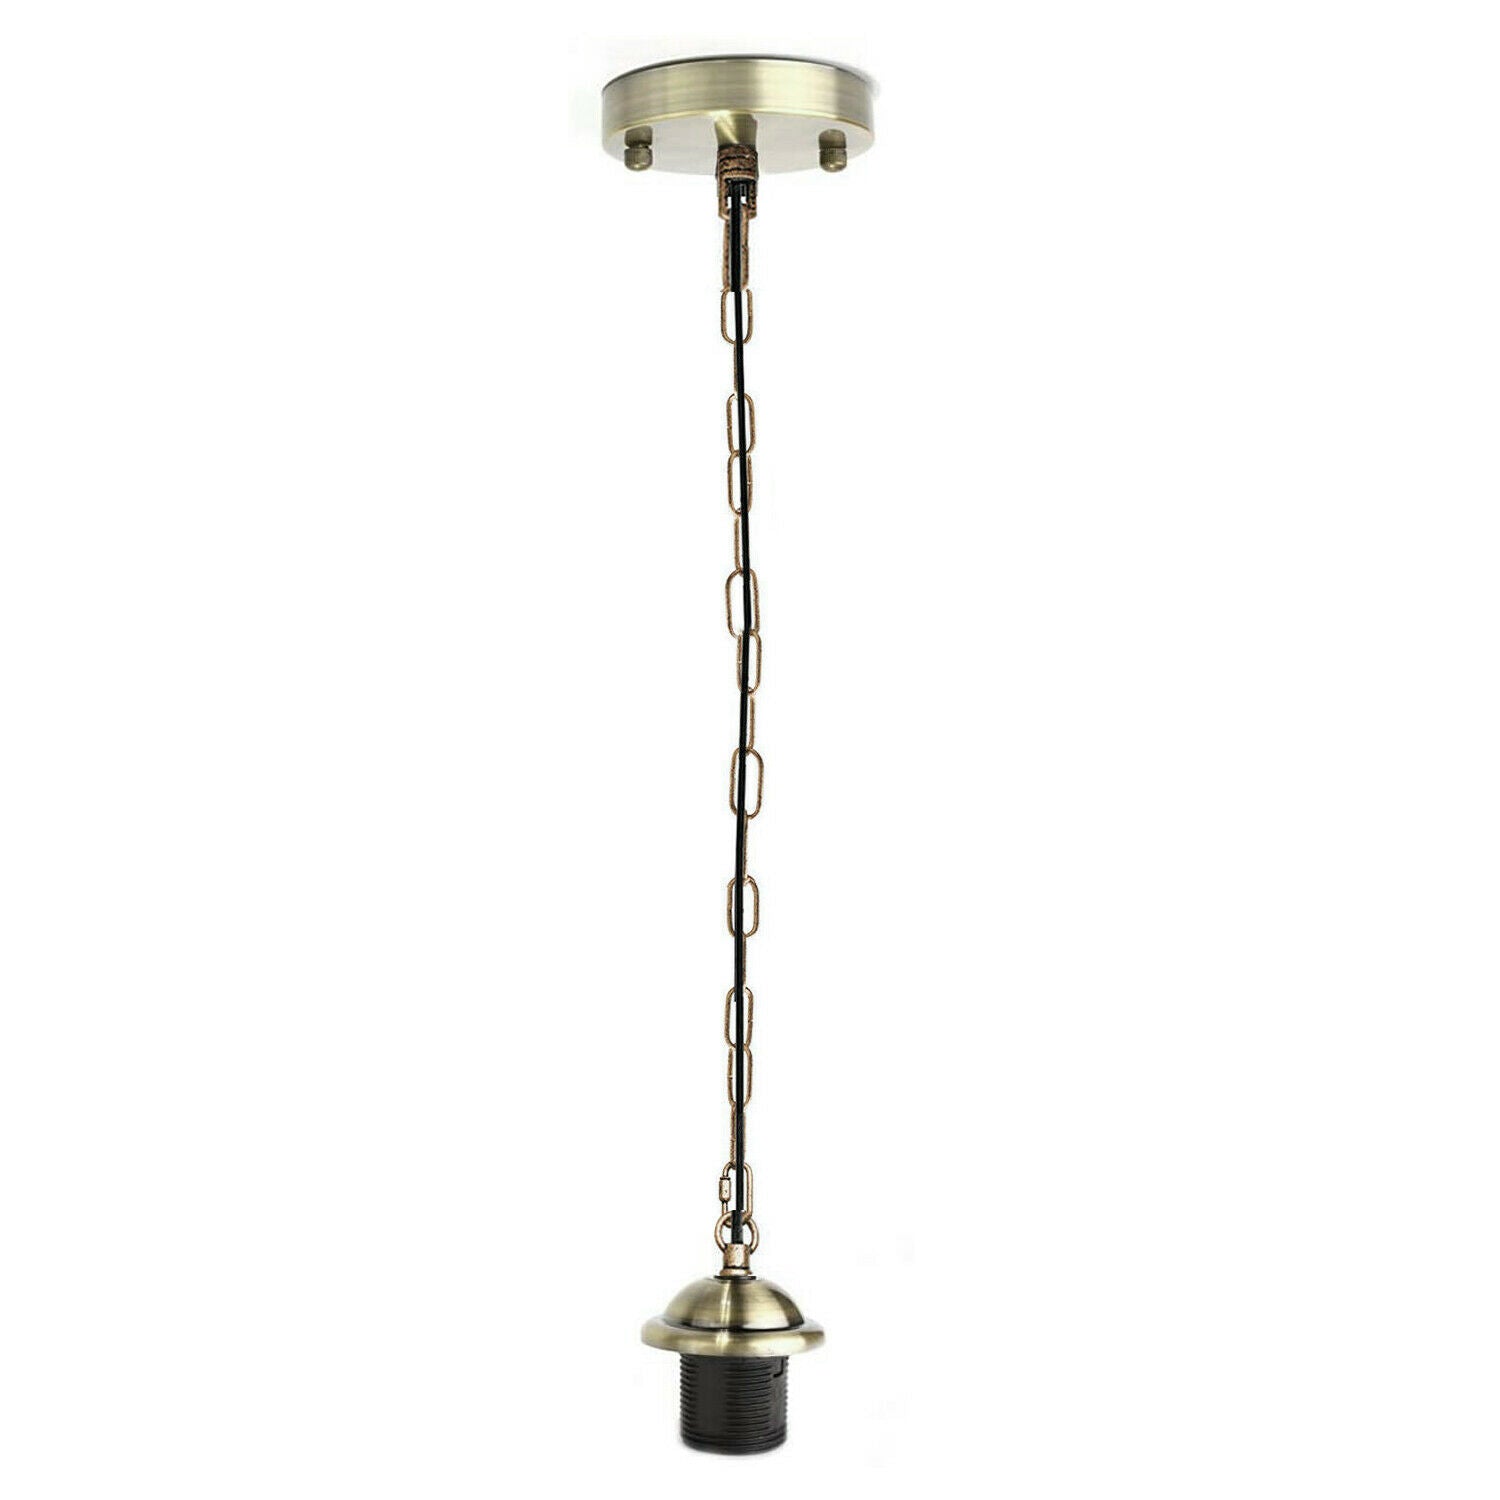 Green Brass Metal Ceiing E27 Lamp Holder Pendant Light With Chain~1777 - LEDSone UK Ltd